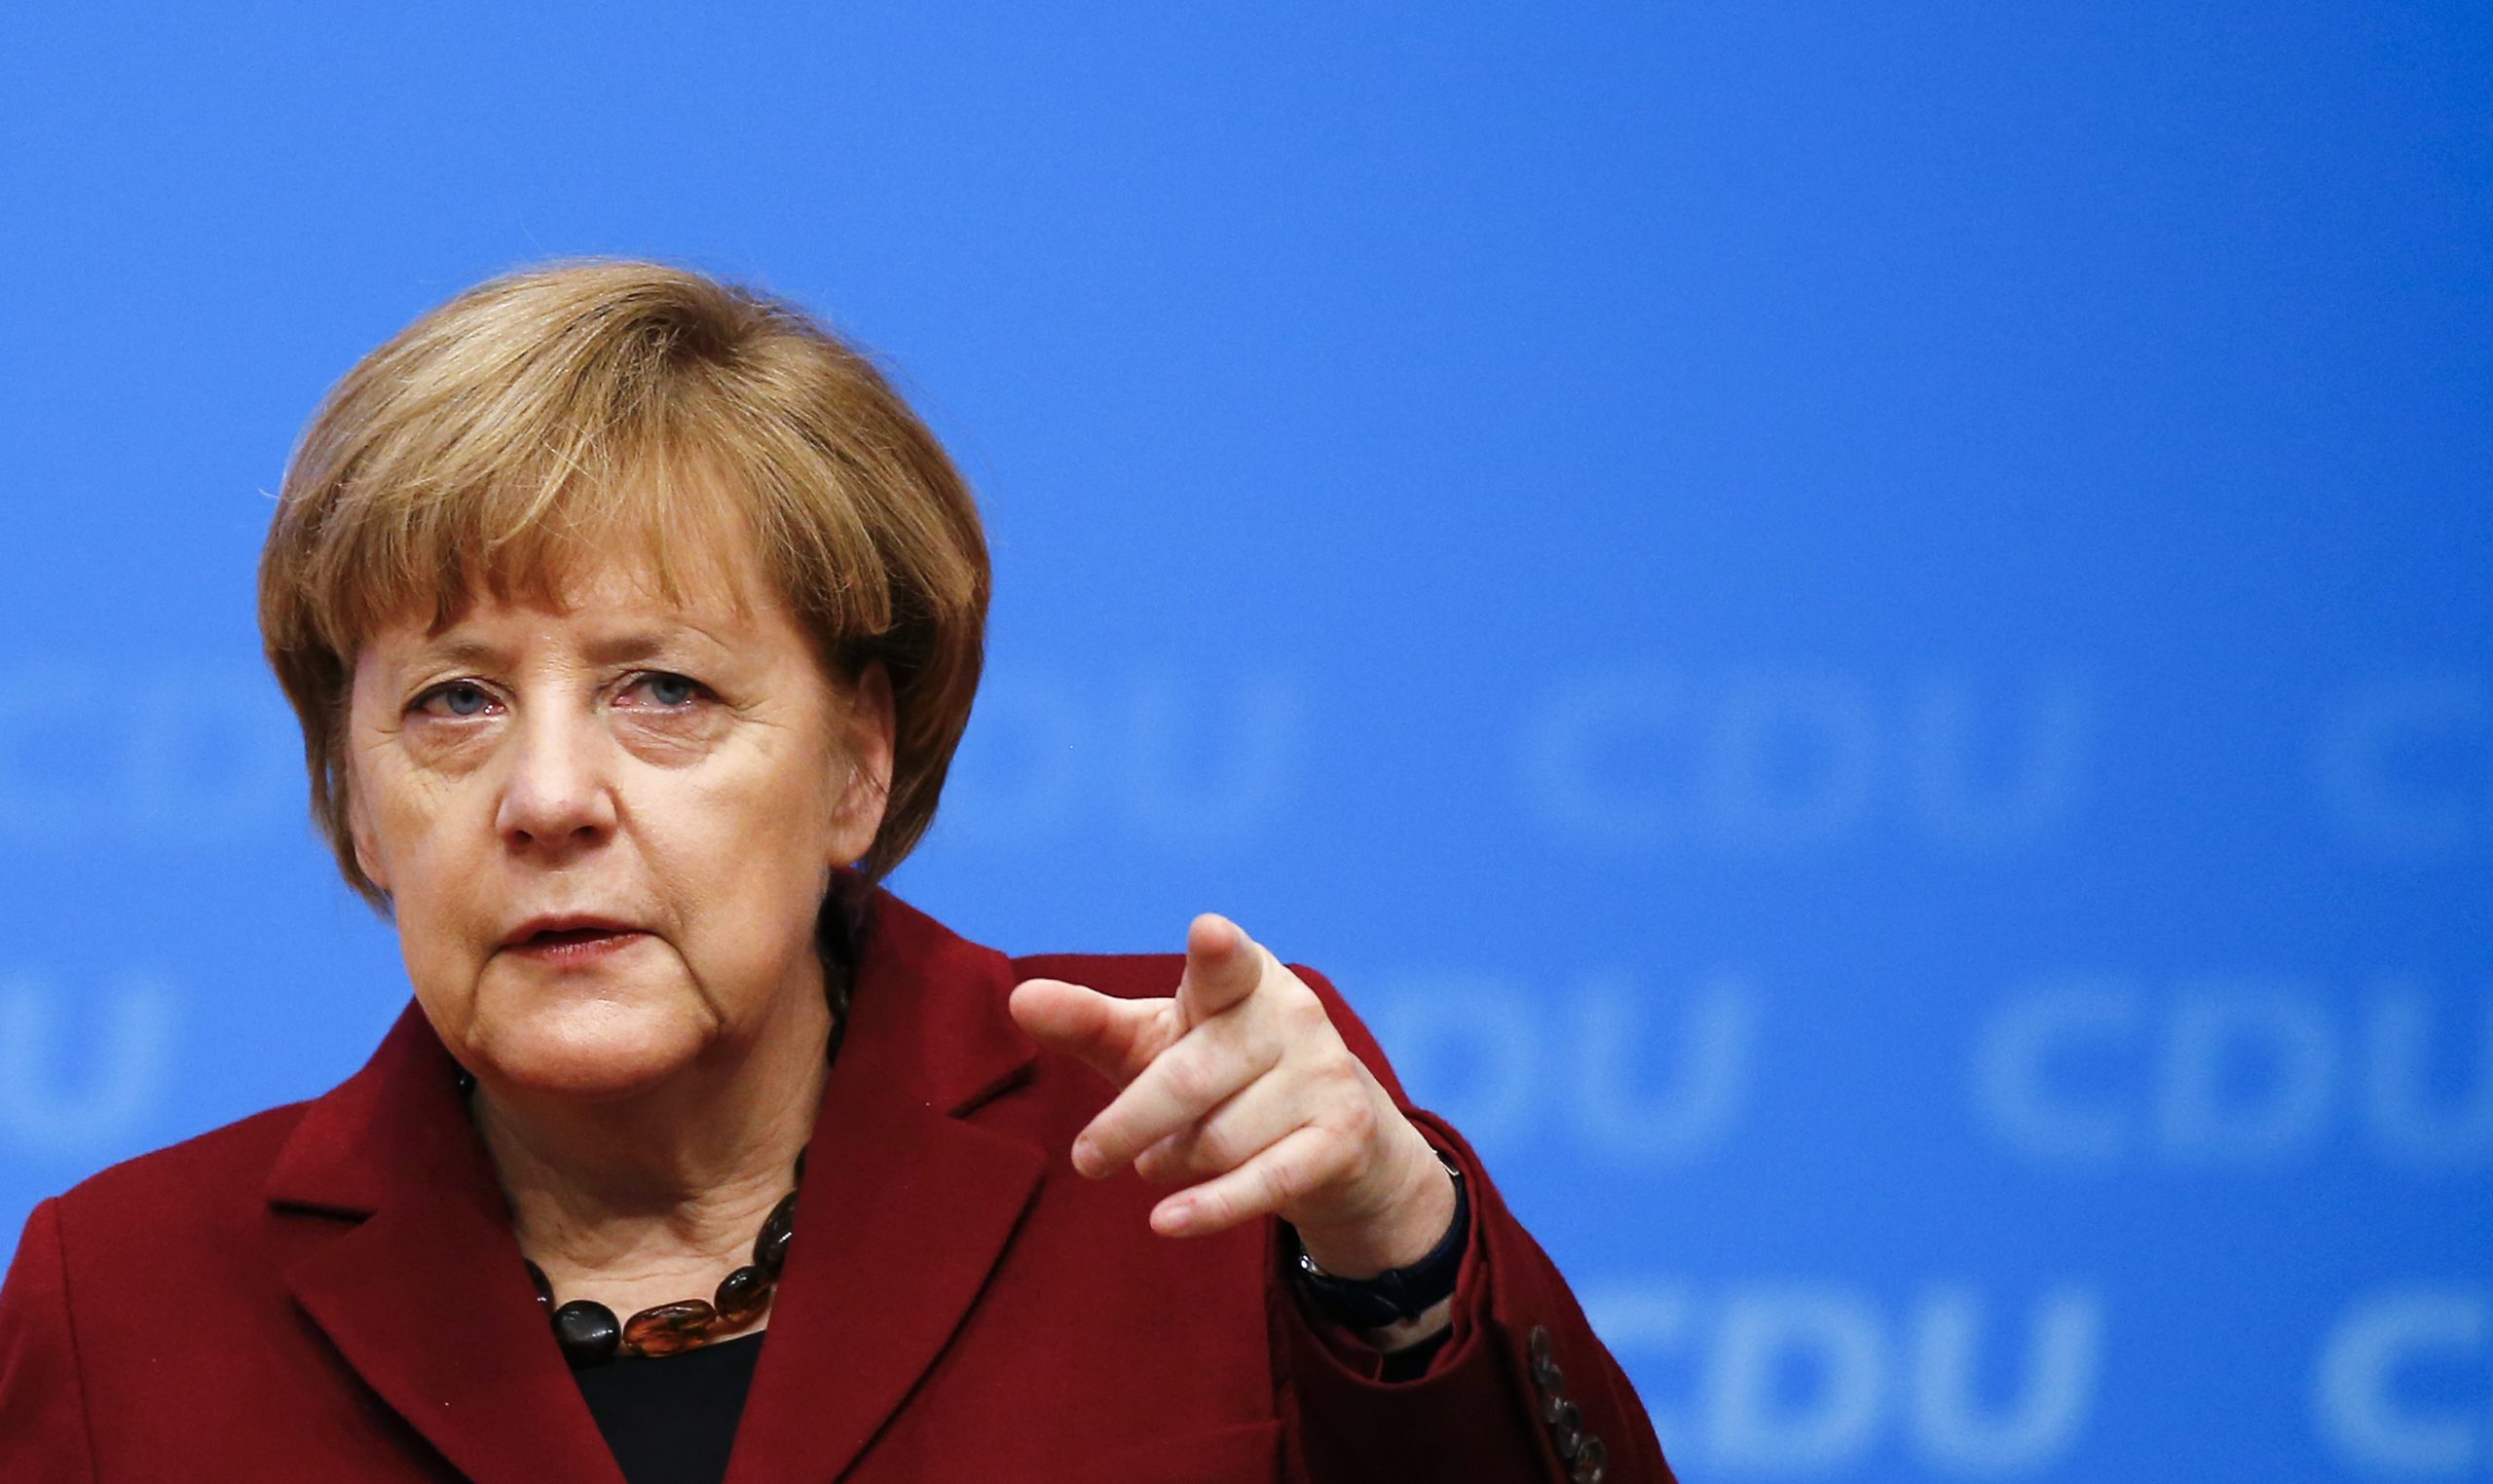 Γερμανία για επίθεση χάκερ: «Δεν υπάρχουν ευαίσθητες πληροφορίες για τη Μέρκελ στα δεδομένα που δημοσιεύτηκαν»